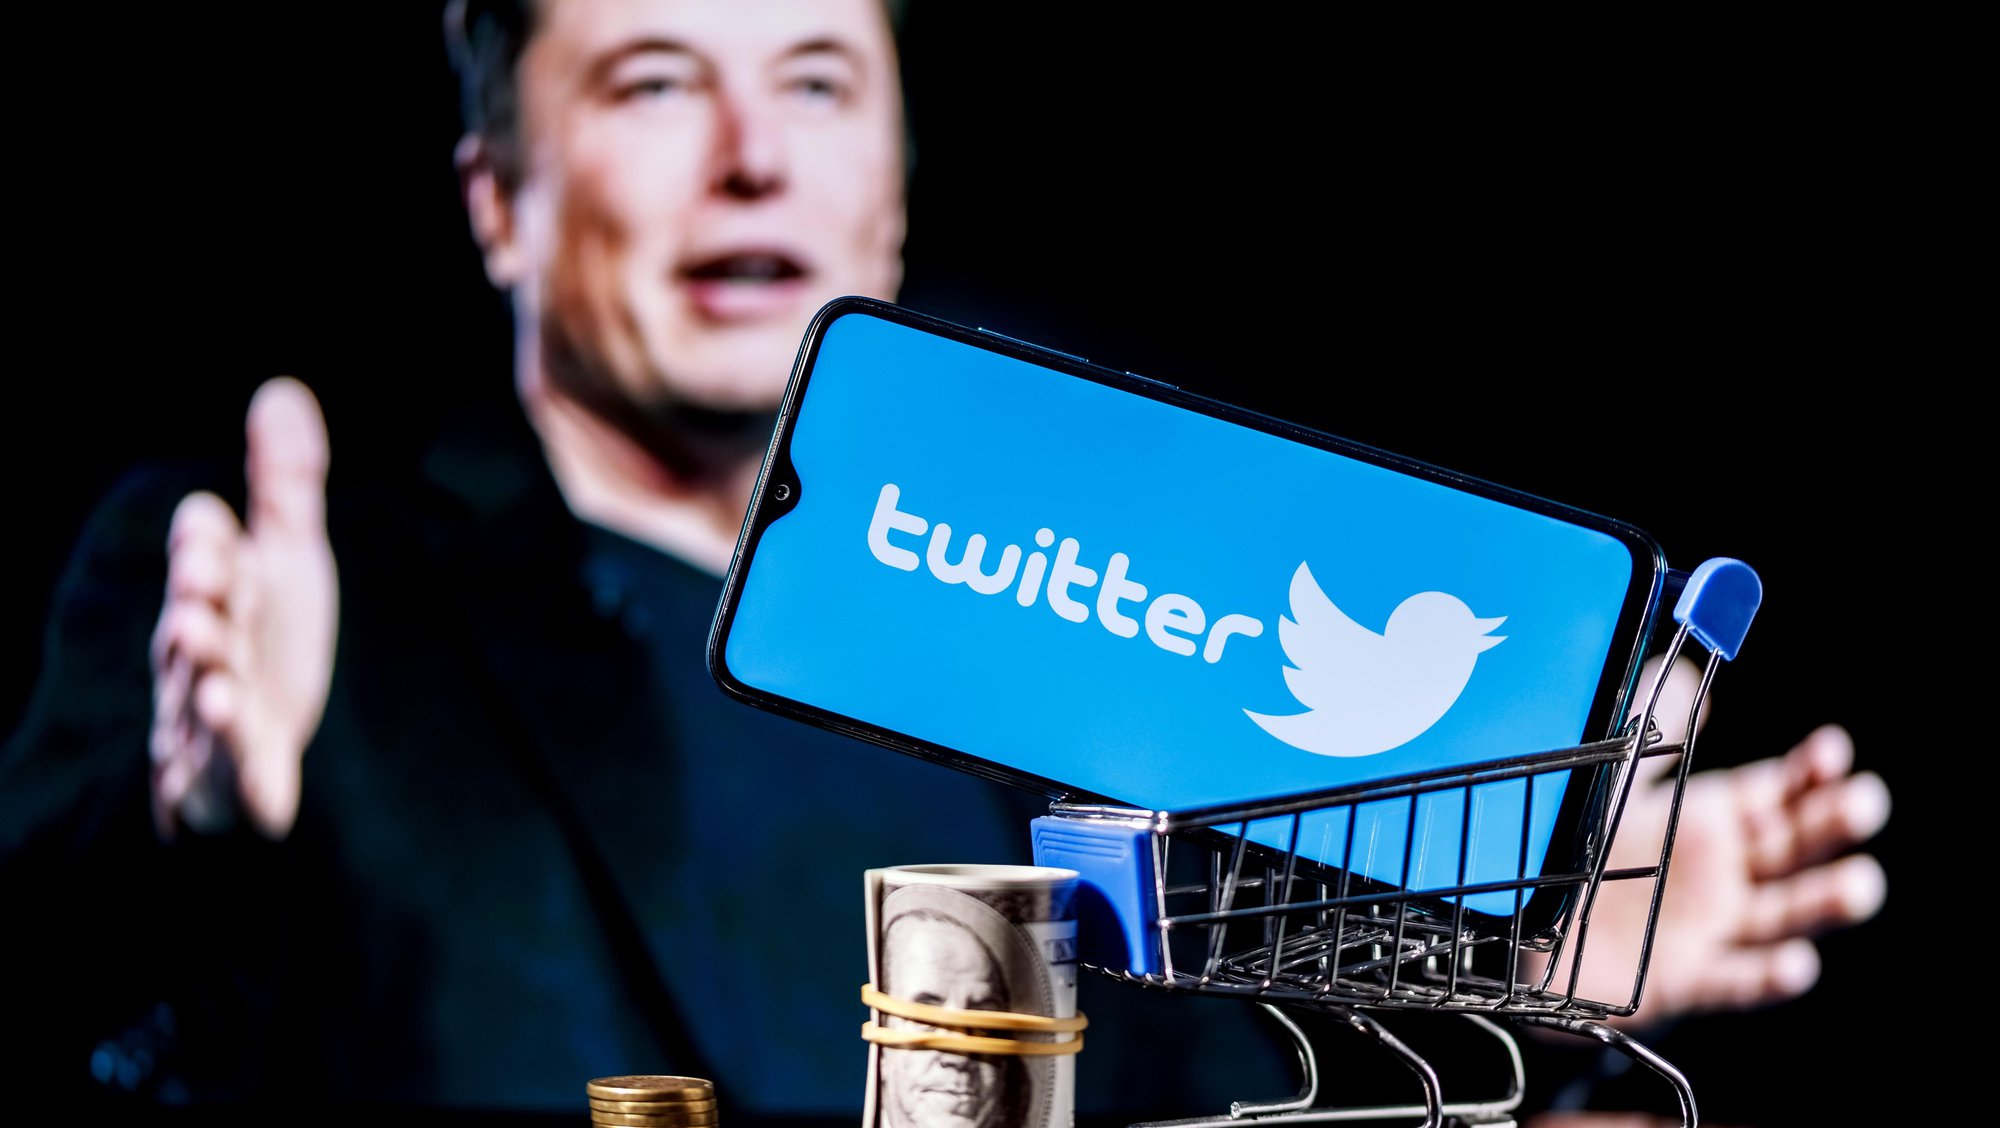 Elon Musk lại bất ngờ quay xe, chấp thuận mua Twitter với giá 44 tỷ USD như ban đầu - Ảnh 2.